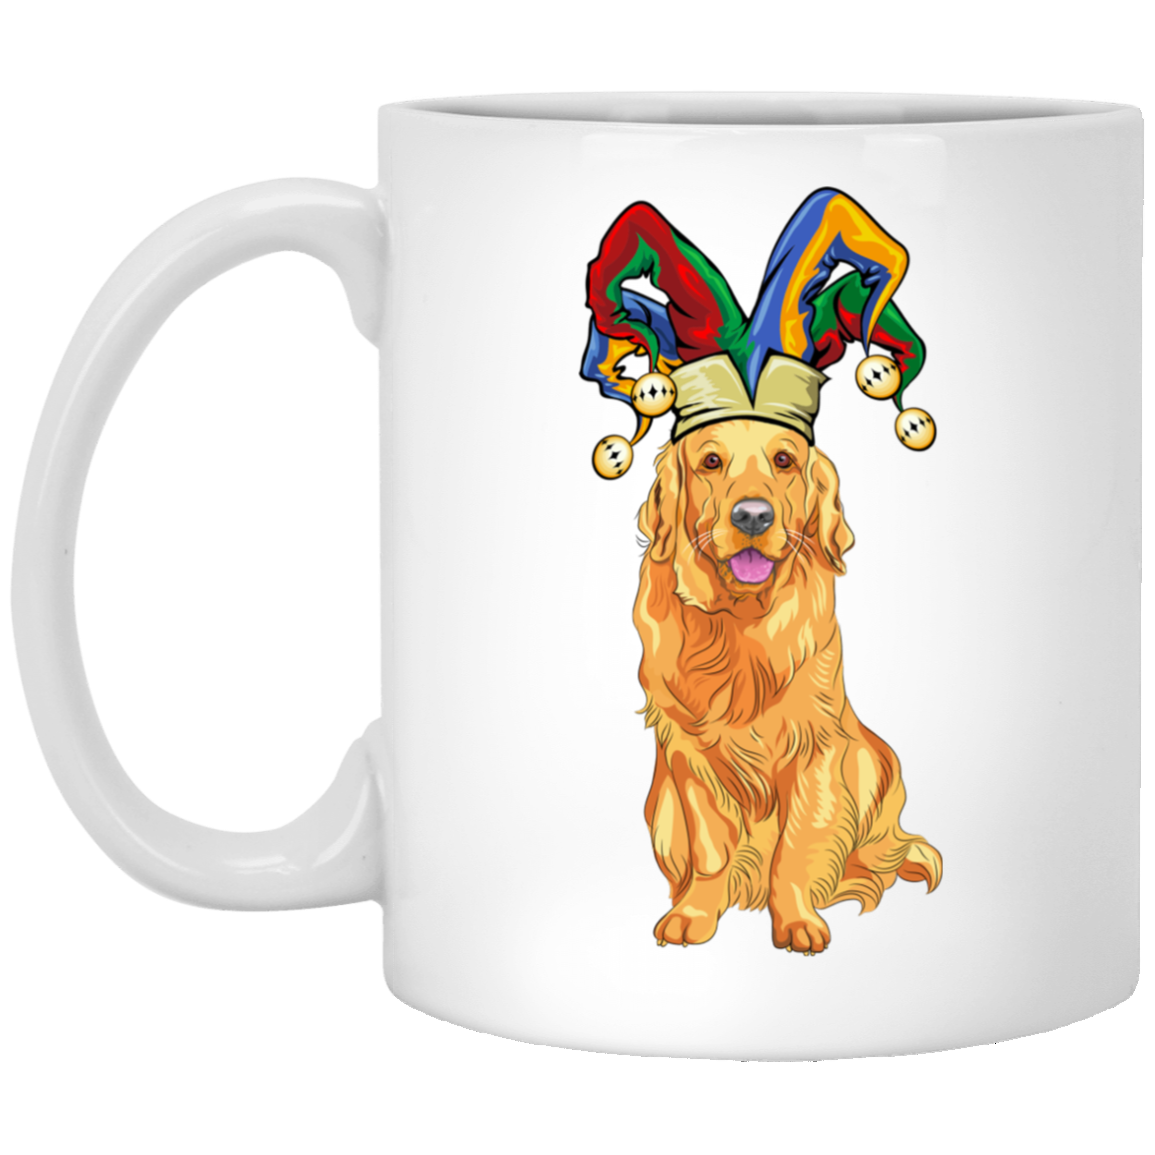 Golden retriever mug â gifts for dog lovers â TRENDING T ...